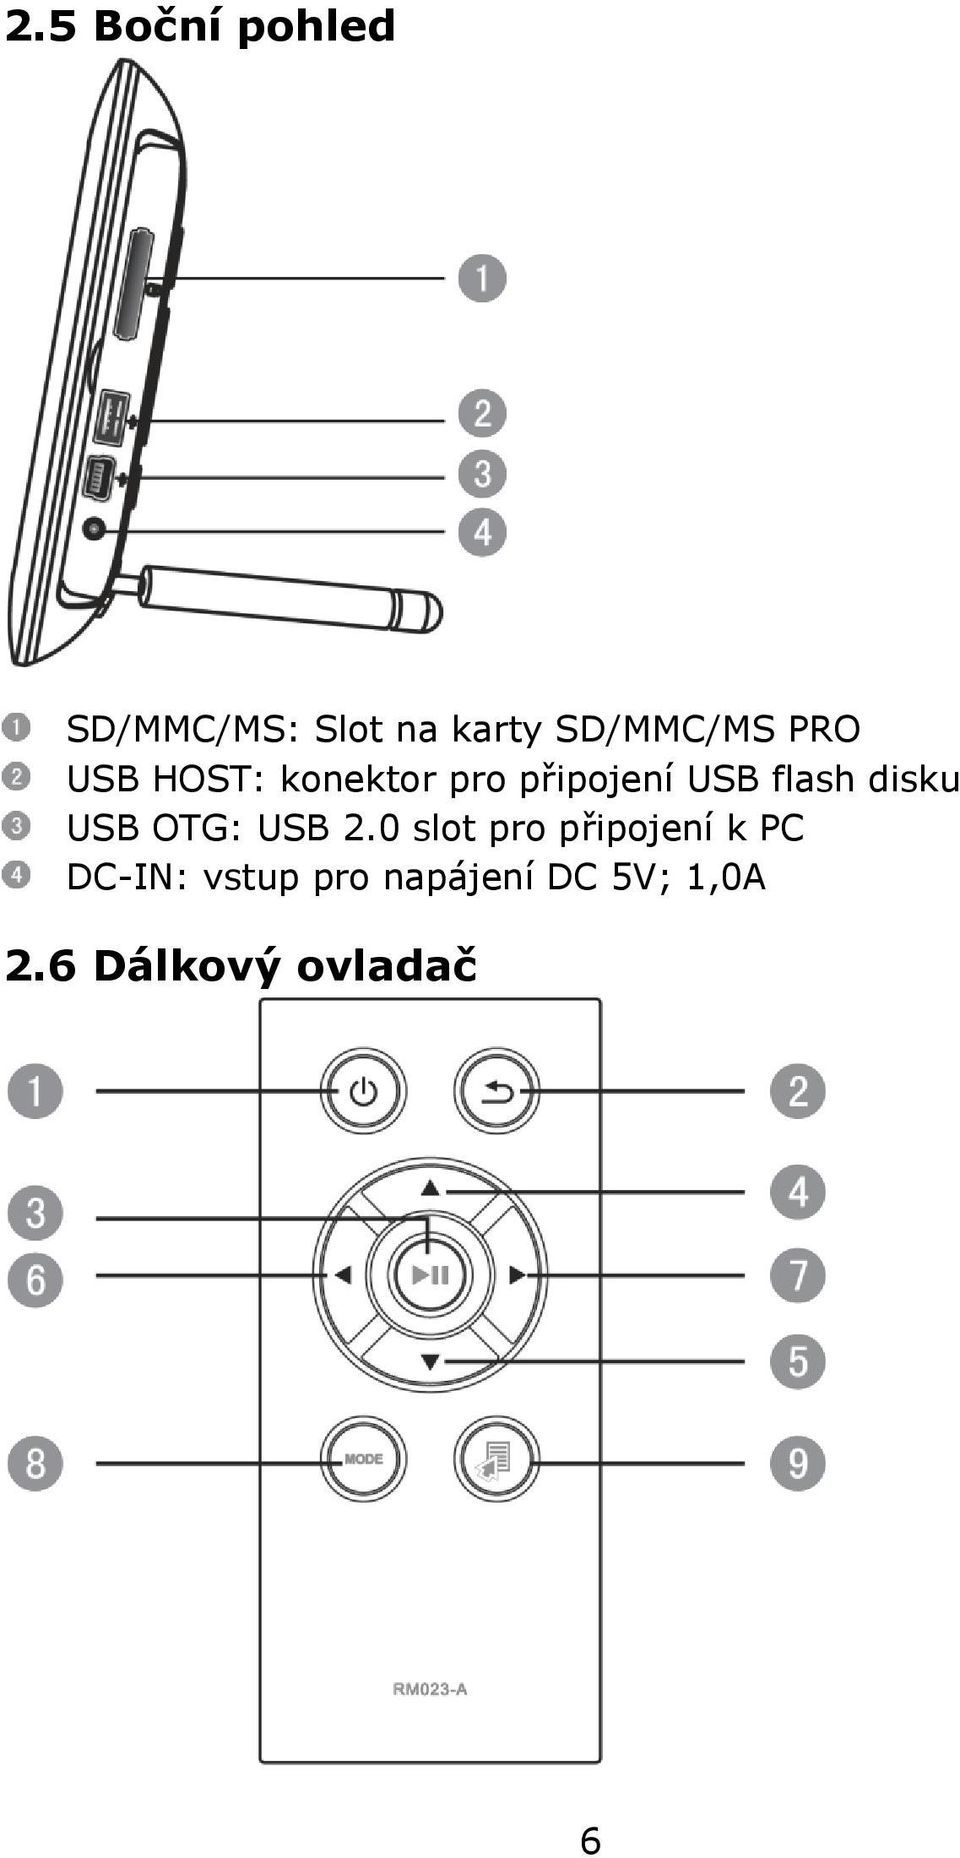 disku USB OTG: USB 2.